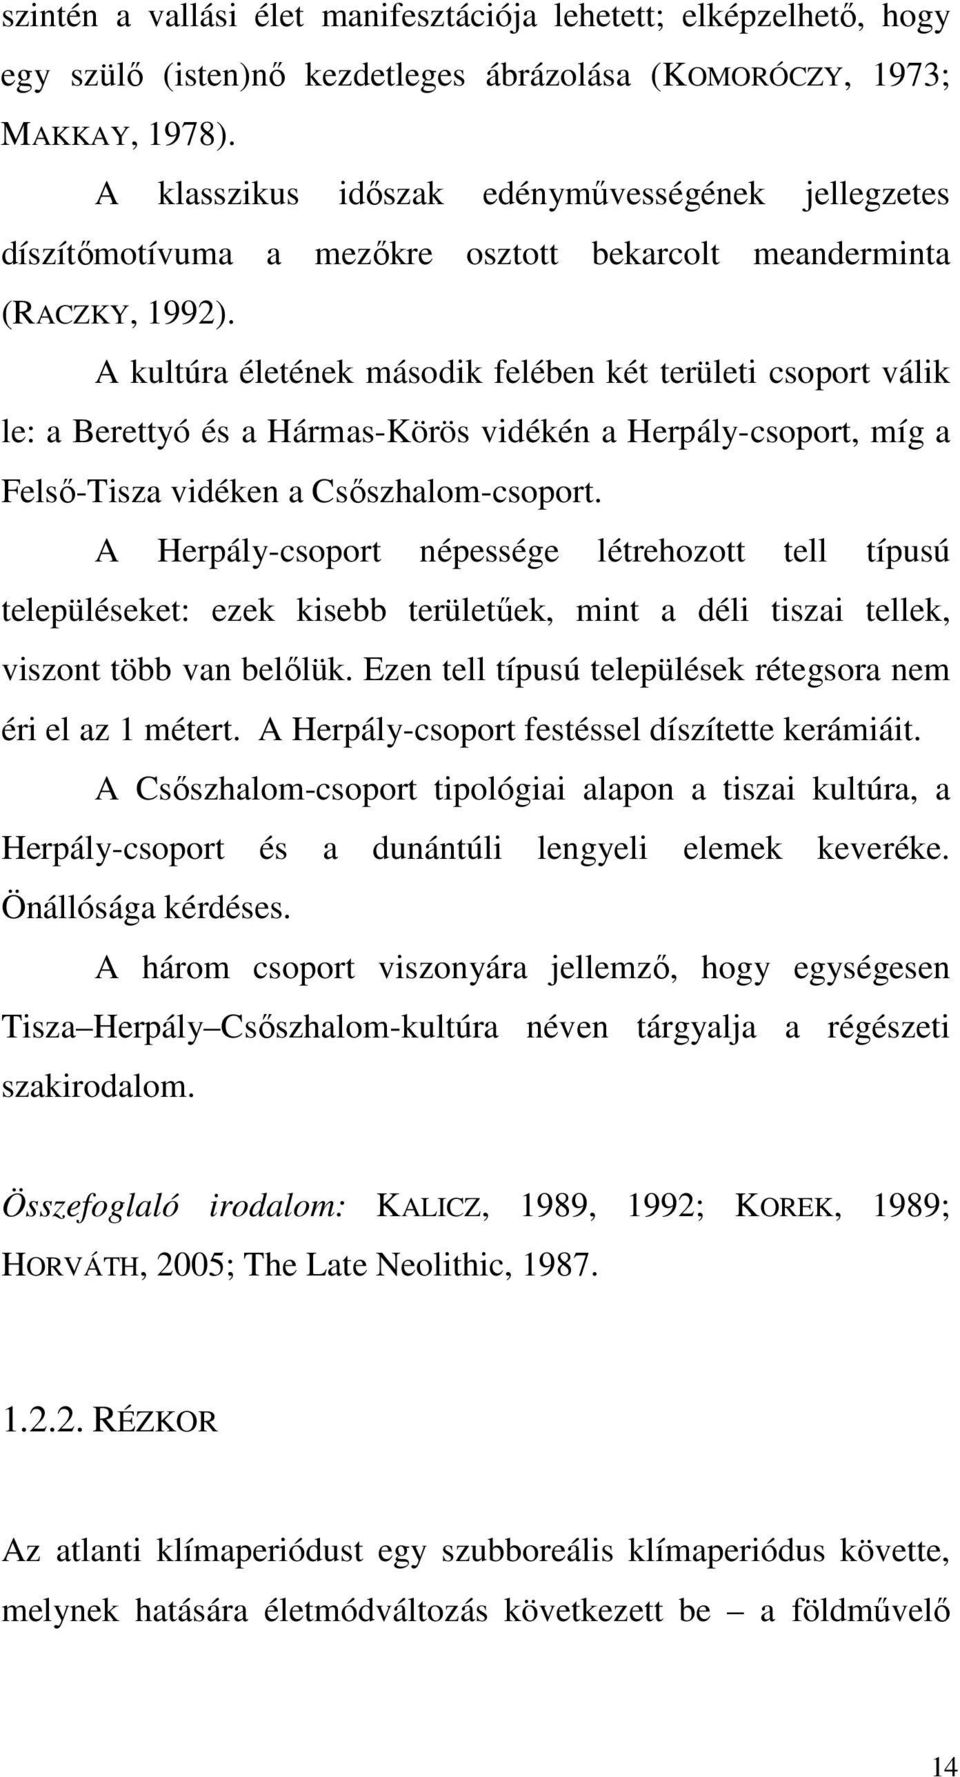 A kultúra életének második felében két területi csoport válik le: a Berettyó és a Hármas-Körös vidékén a Herpály-csoport, míg a Felső-Tisza vidéken a Csőszhalom-csoport.